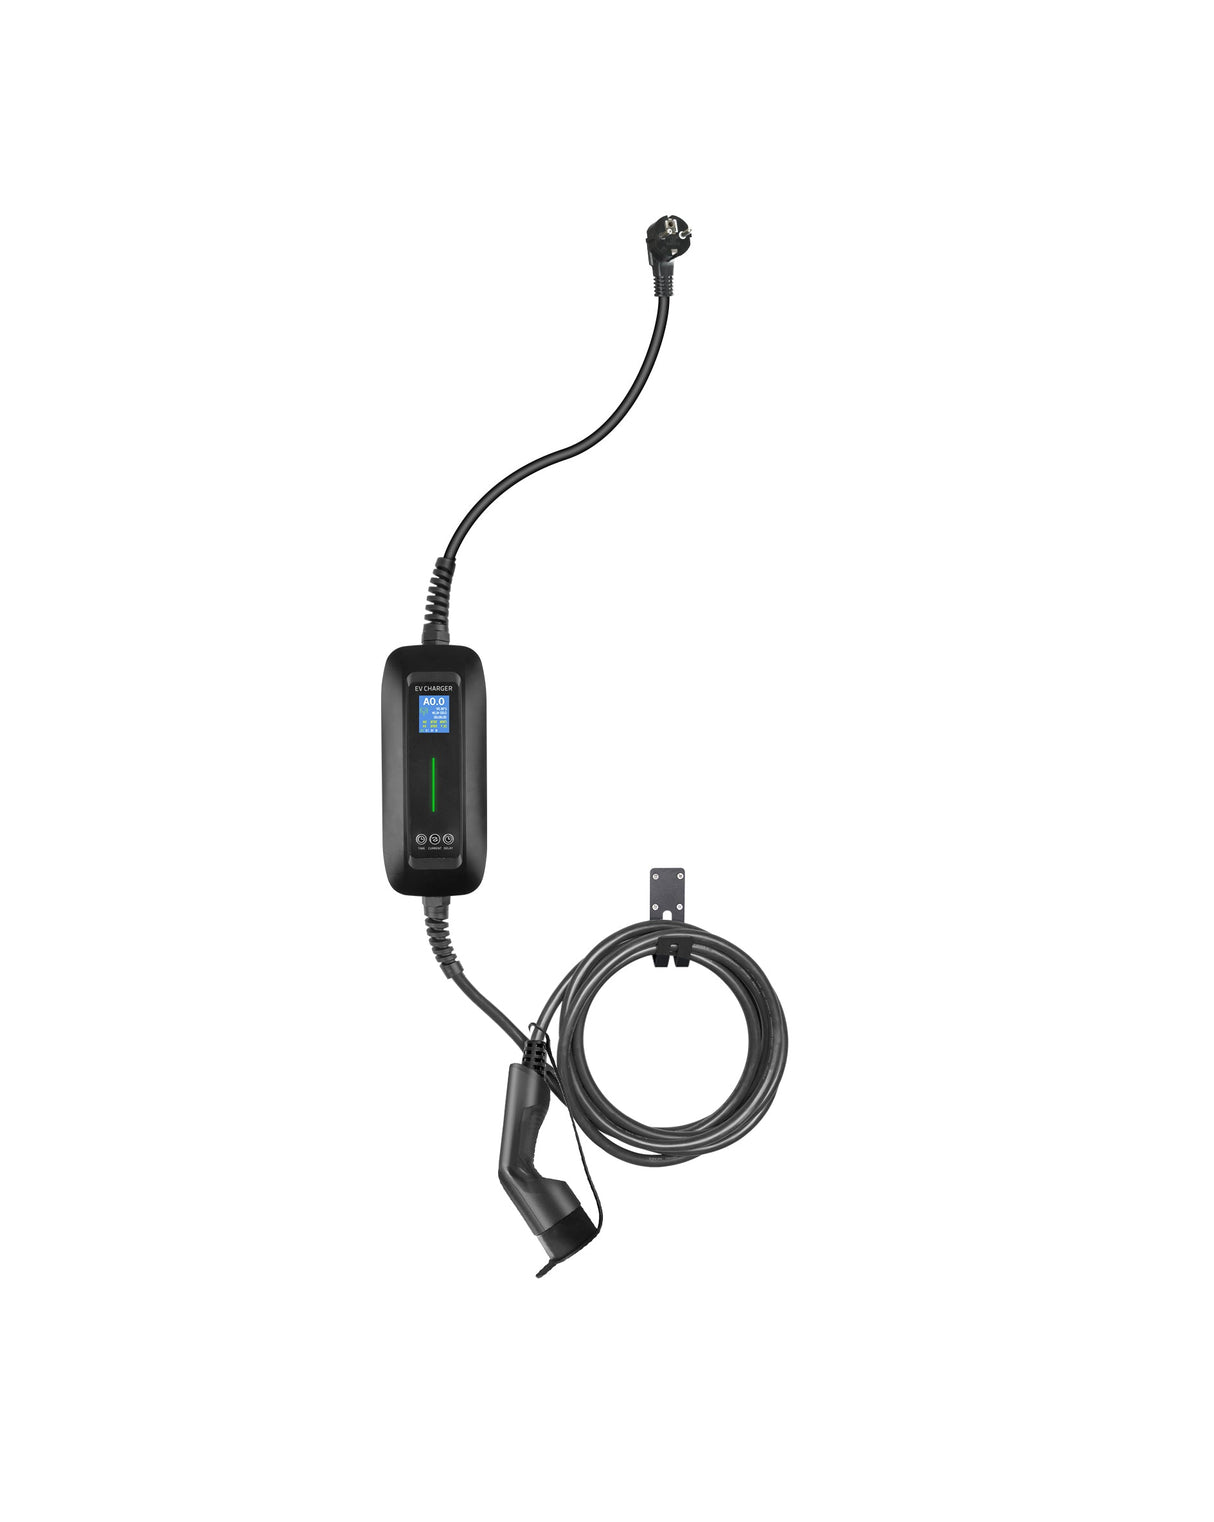 Charger mobile Skoda Octavia Combi - LCD Black Type 2 à Schuko - Fonction de chargement et de mémoire reportée